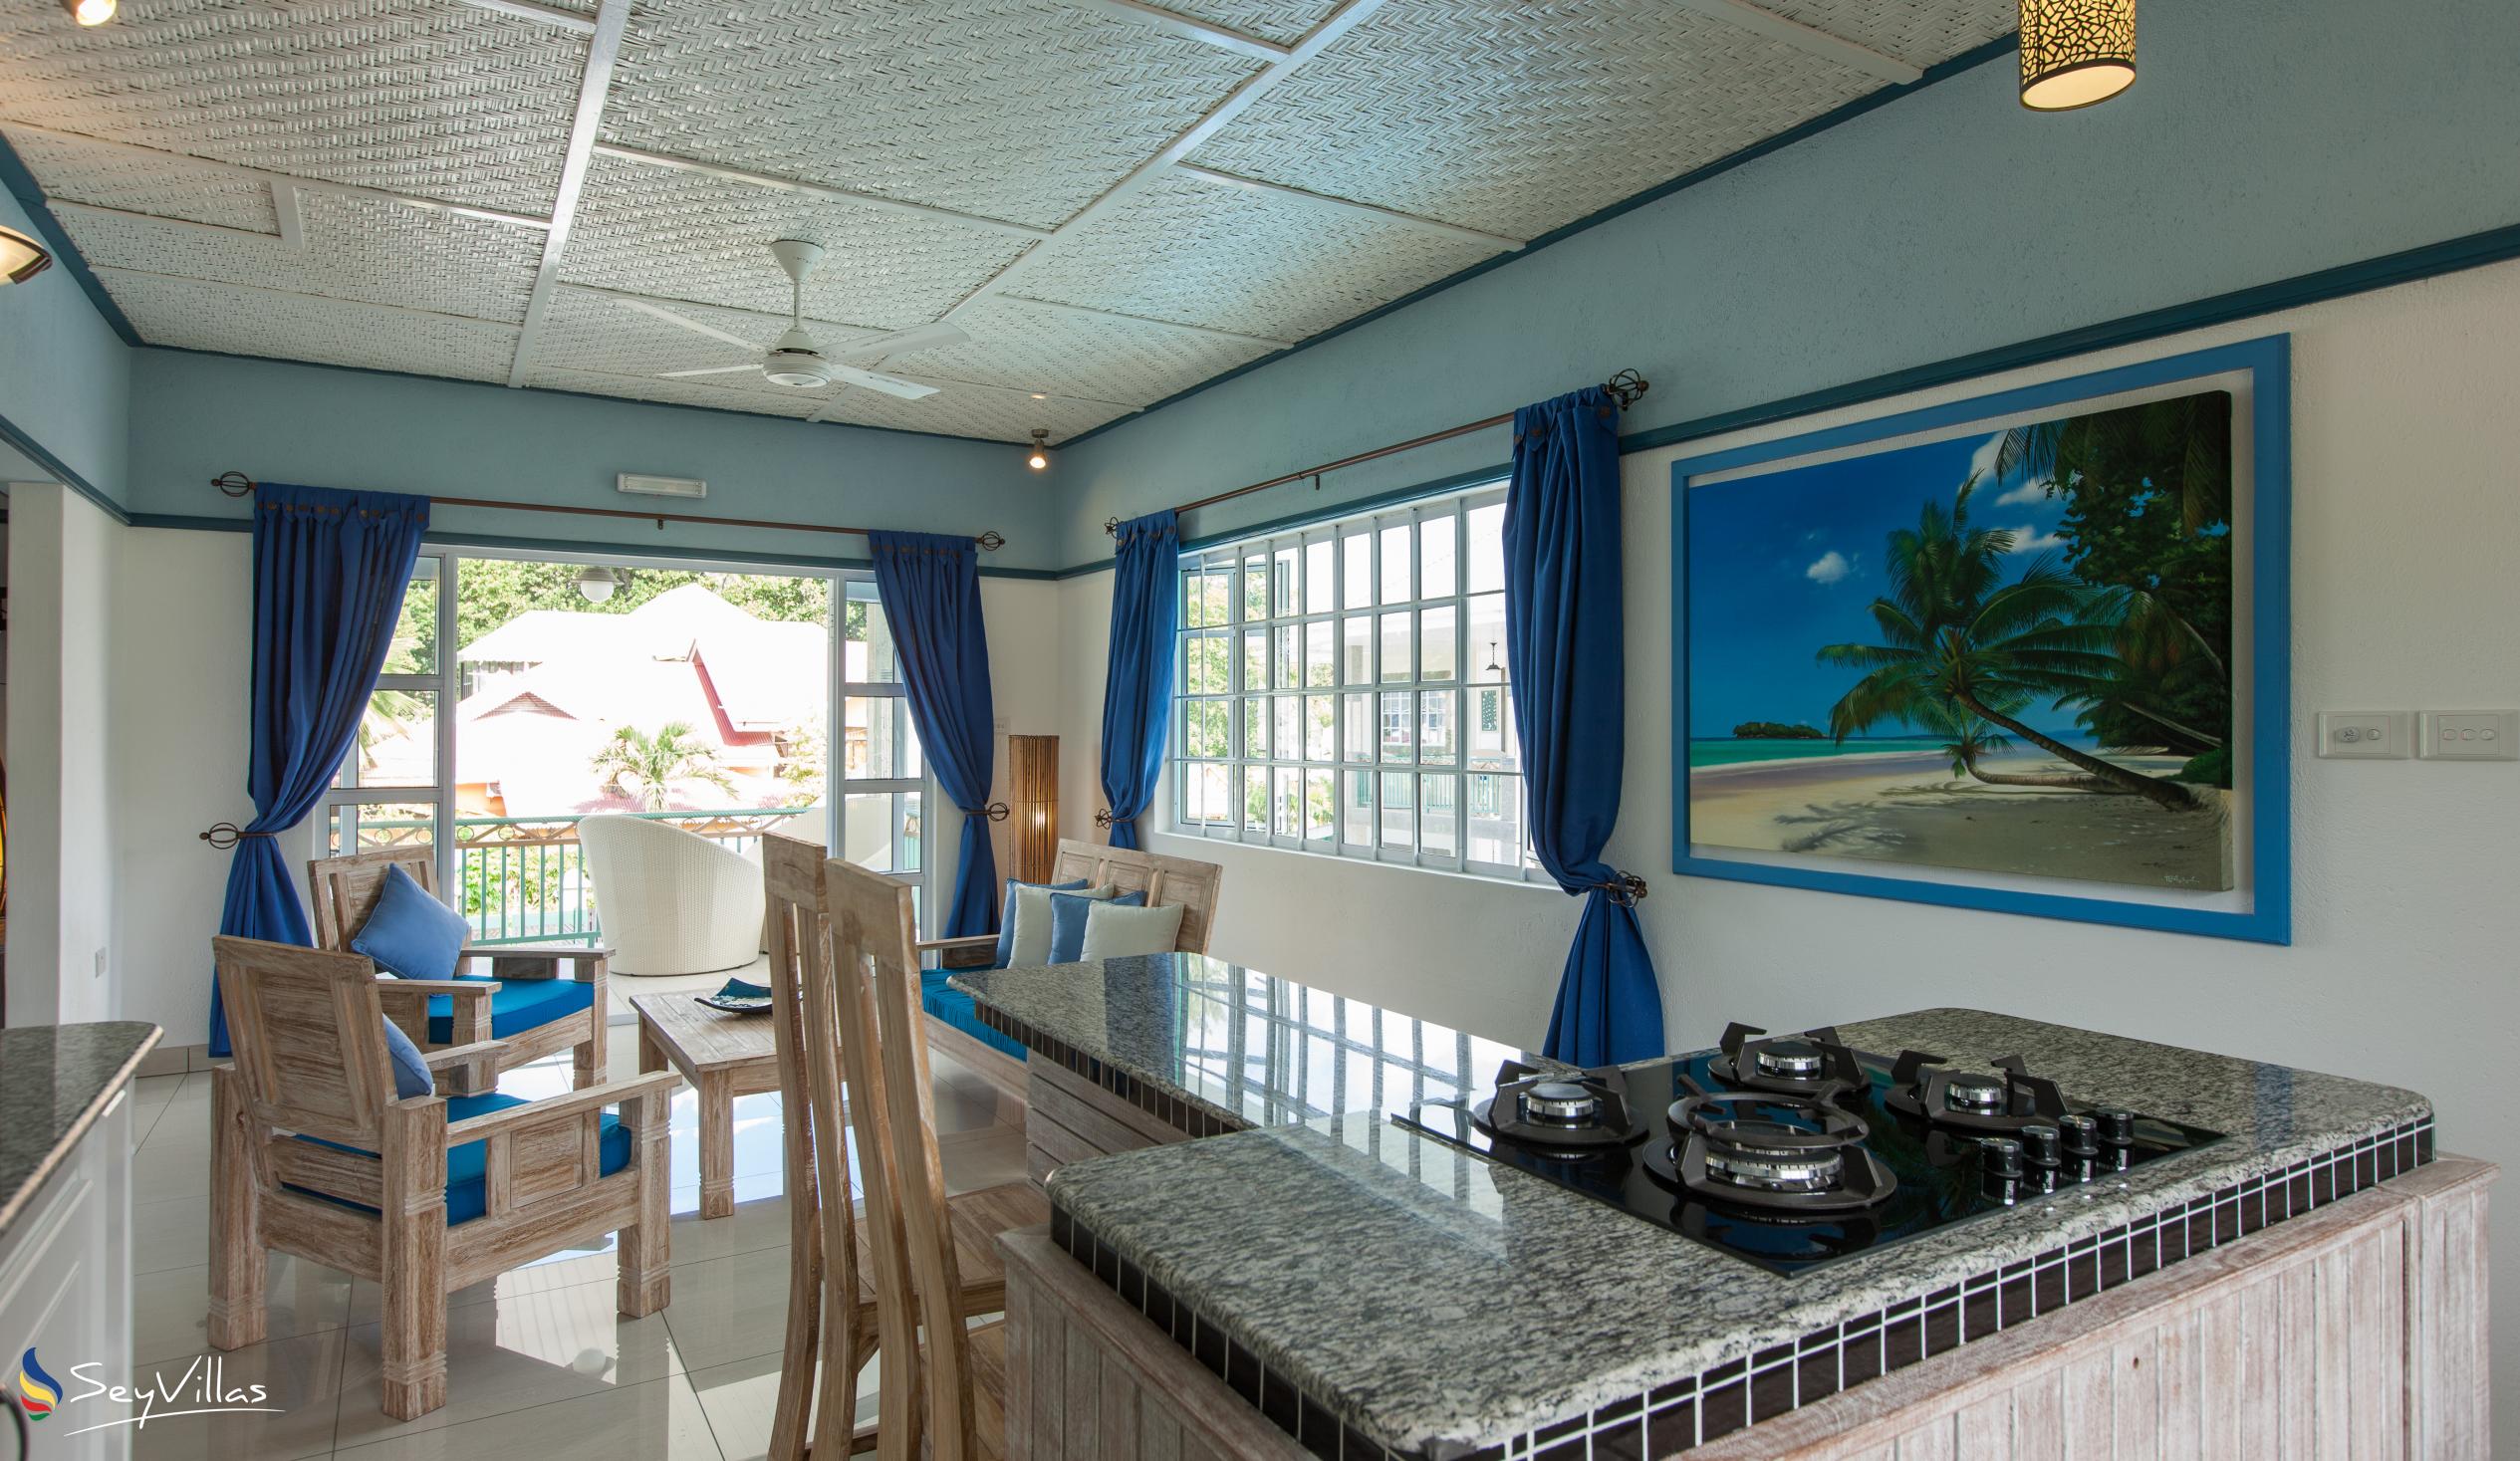 Foto 43: Villa Charme De L'ile - Appartamento Deluxe con vista piscina - La Digue (Seychelles)